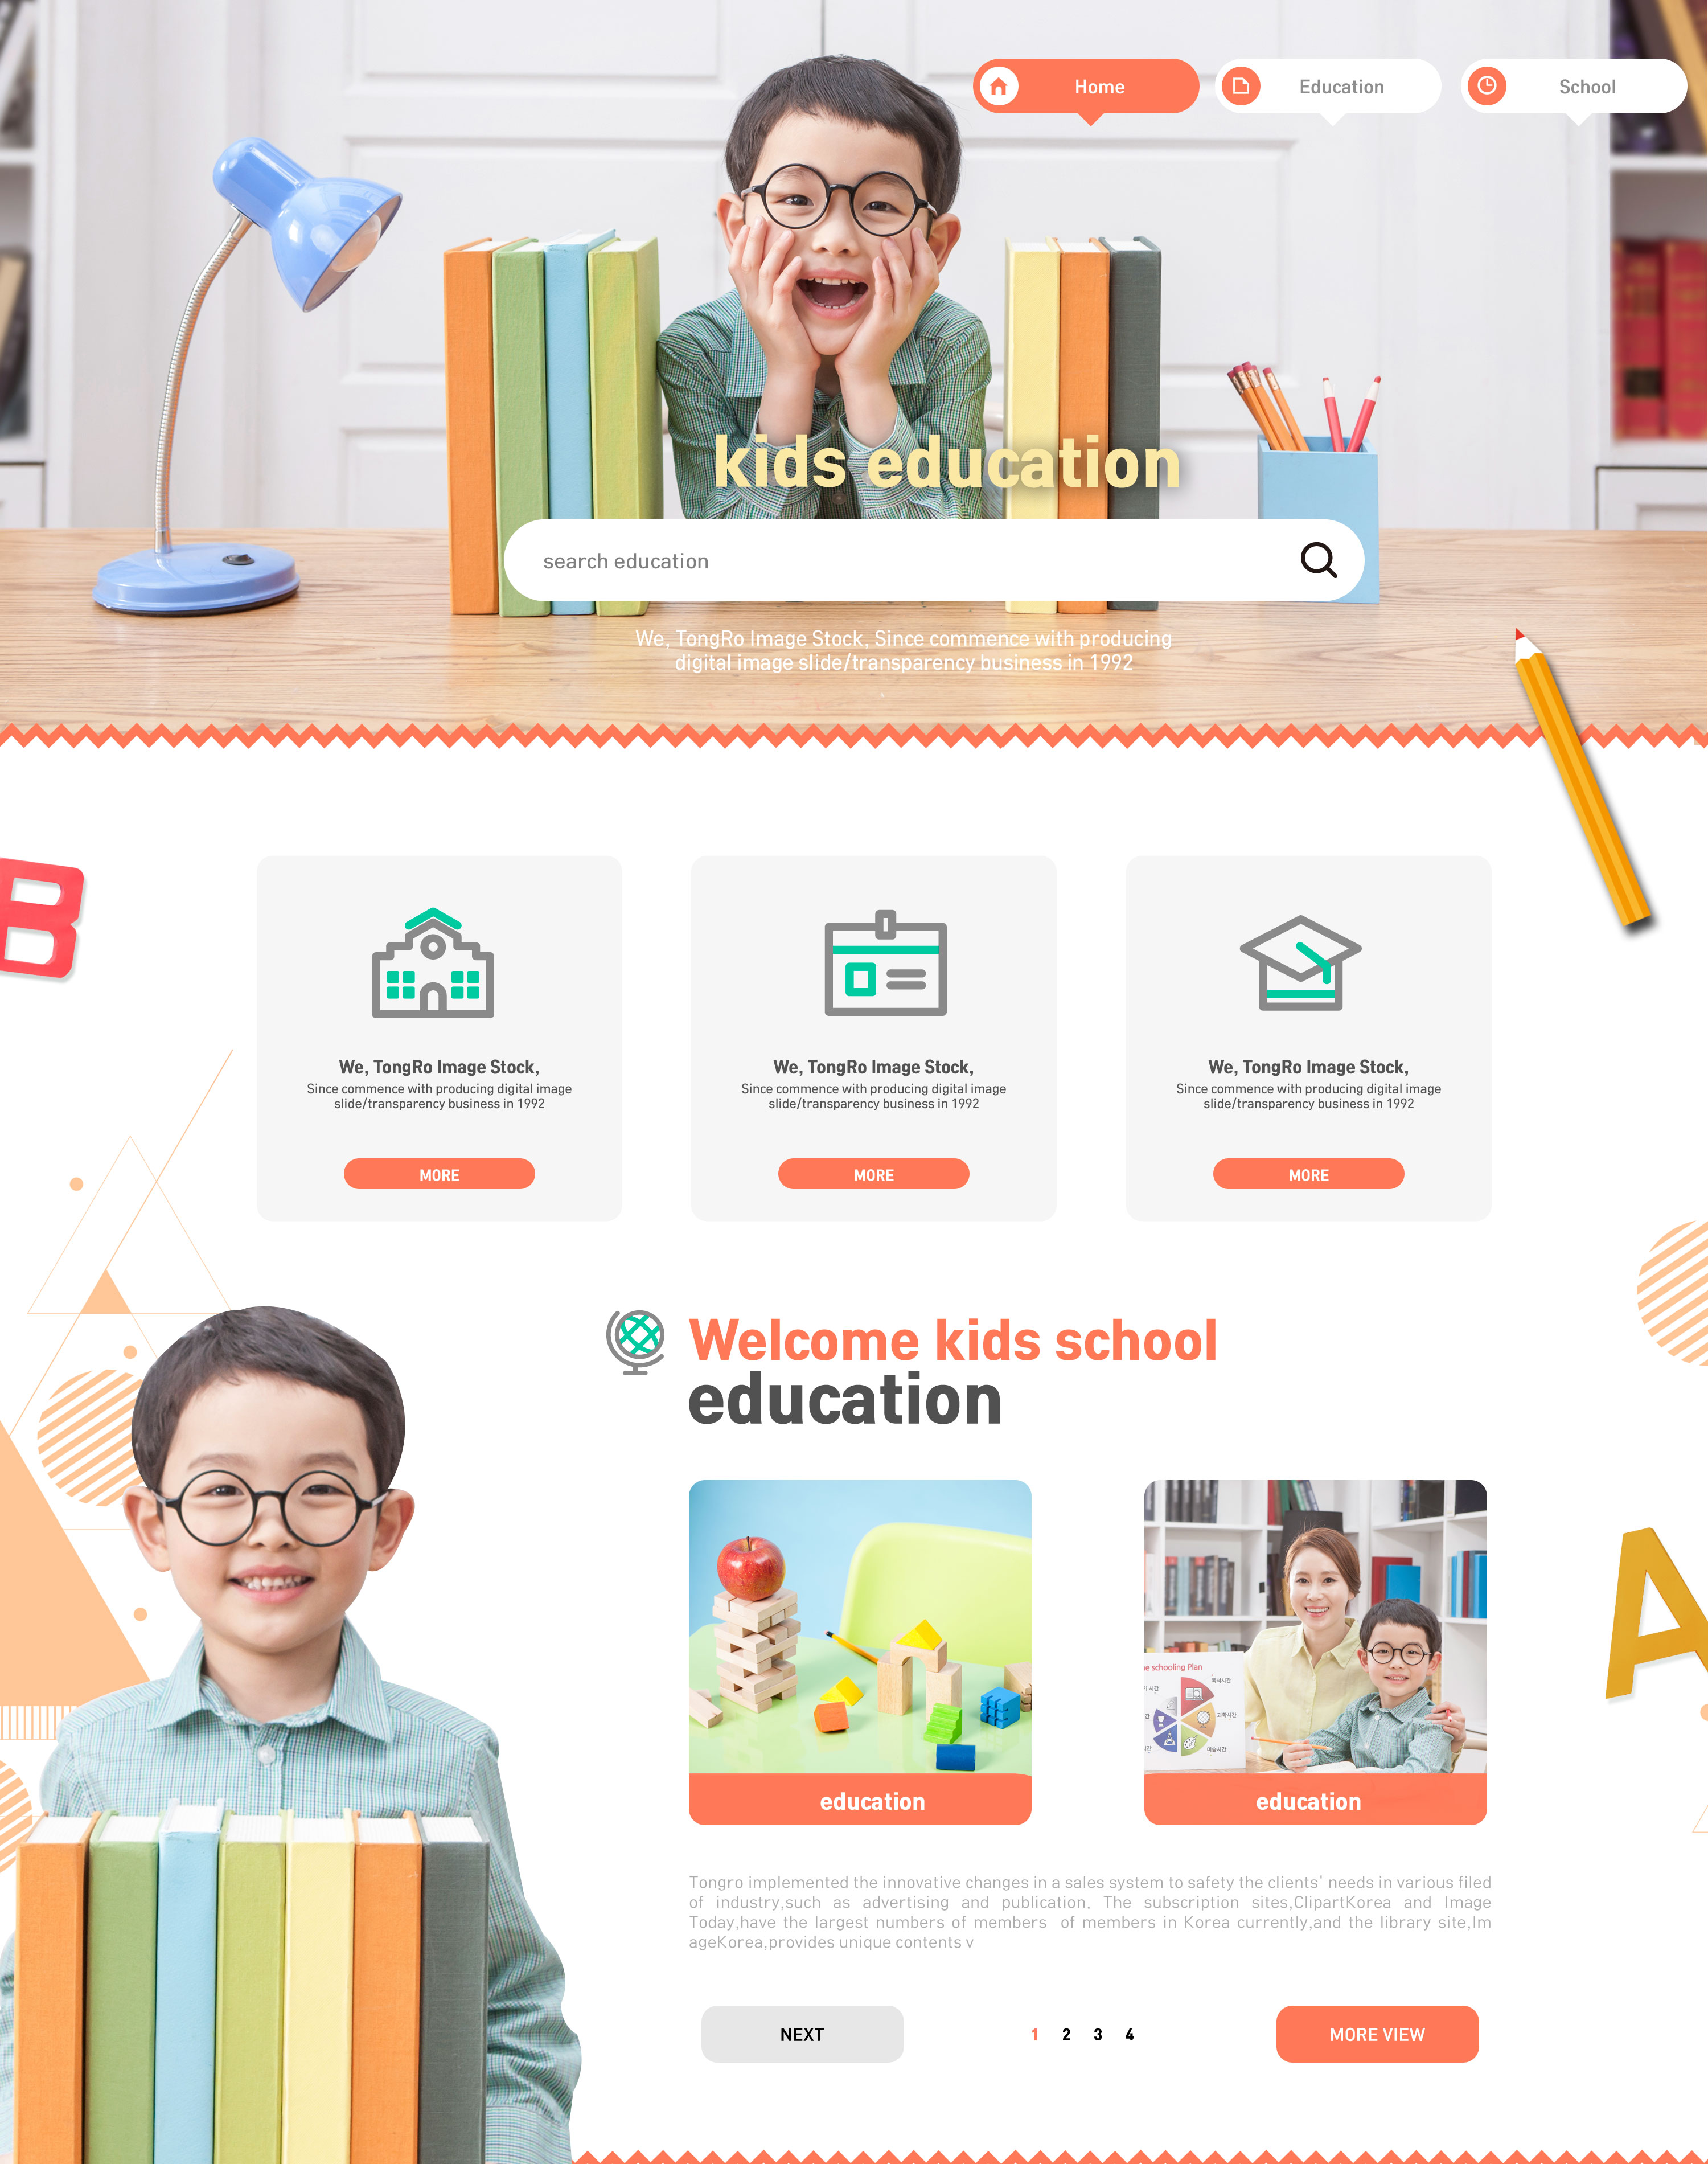 少儿&儿童在线学习教育网站UI设计PSD模板插图